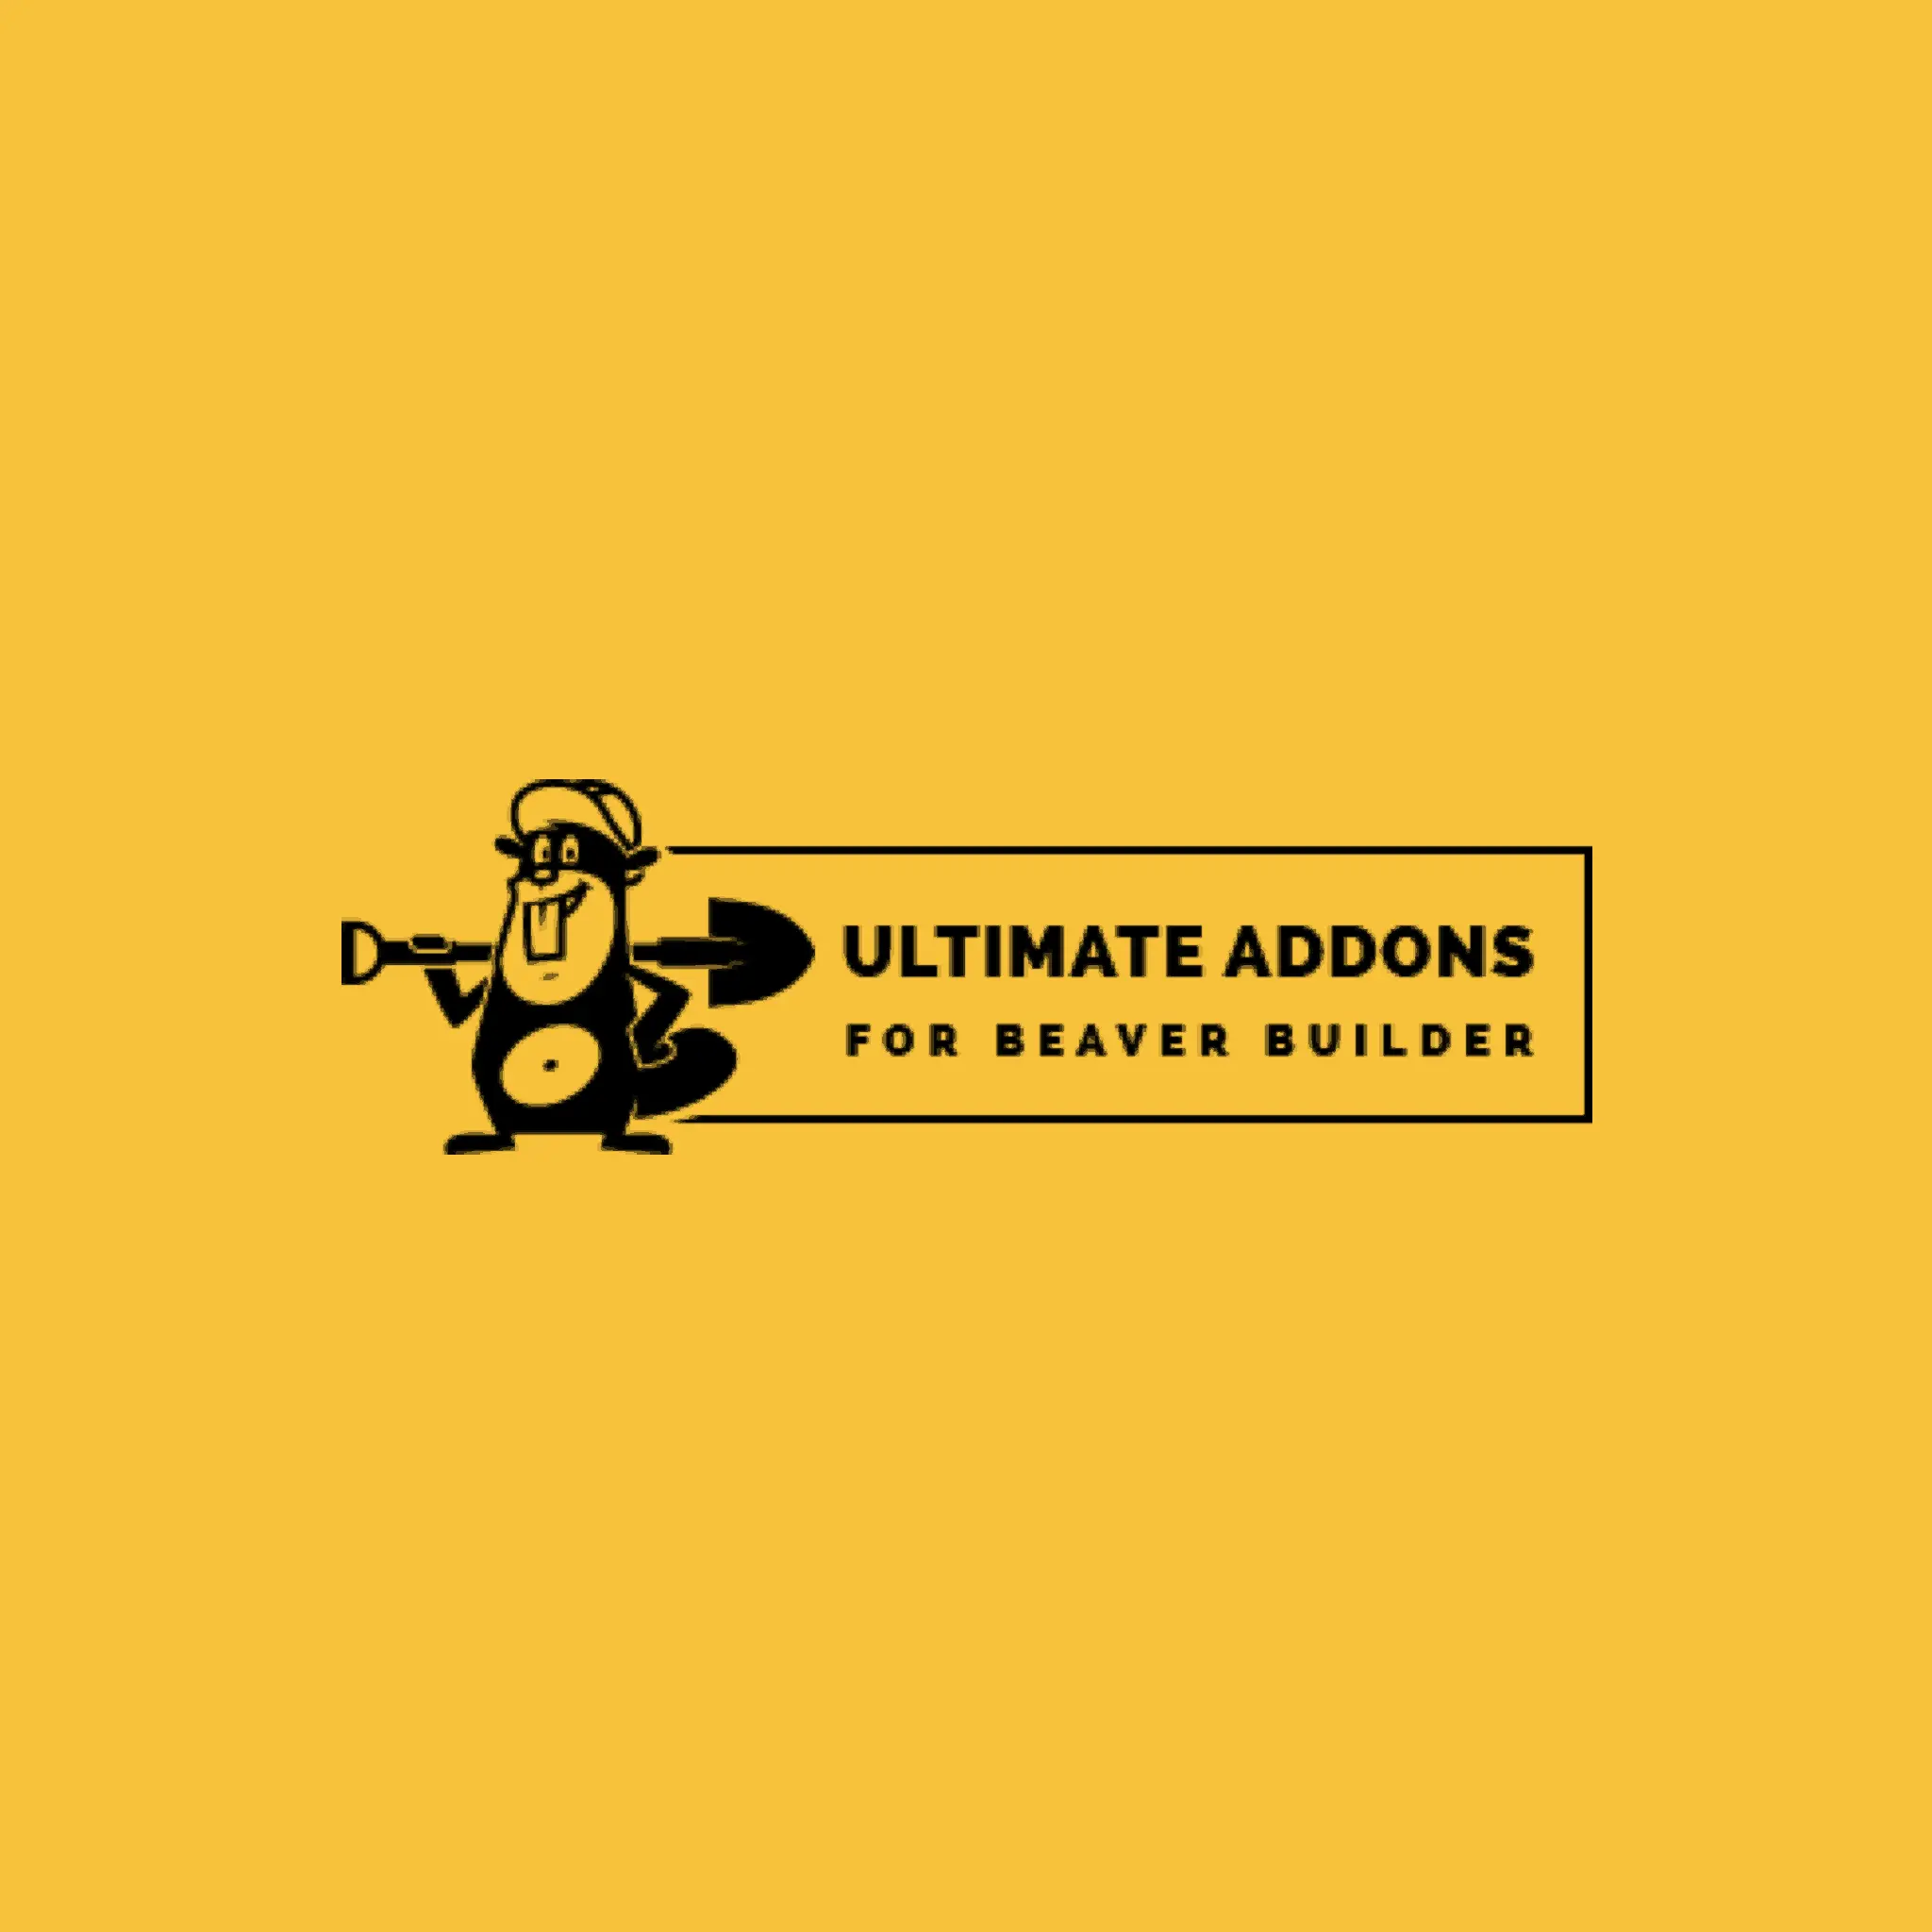 ultimate-addons-for-beaver-builder-banner